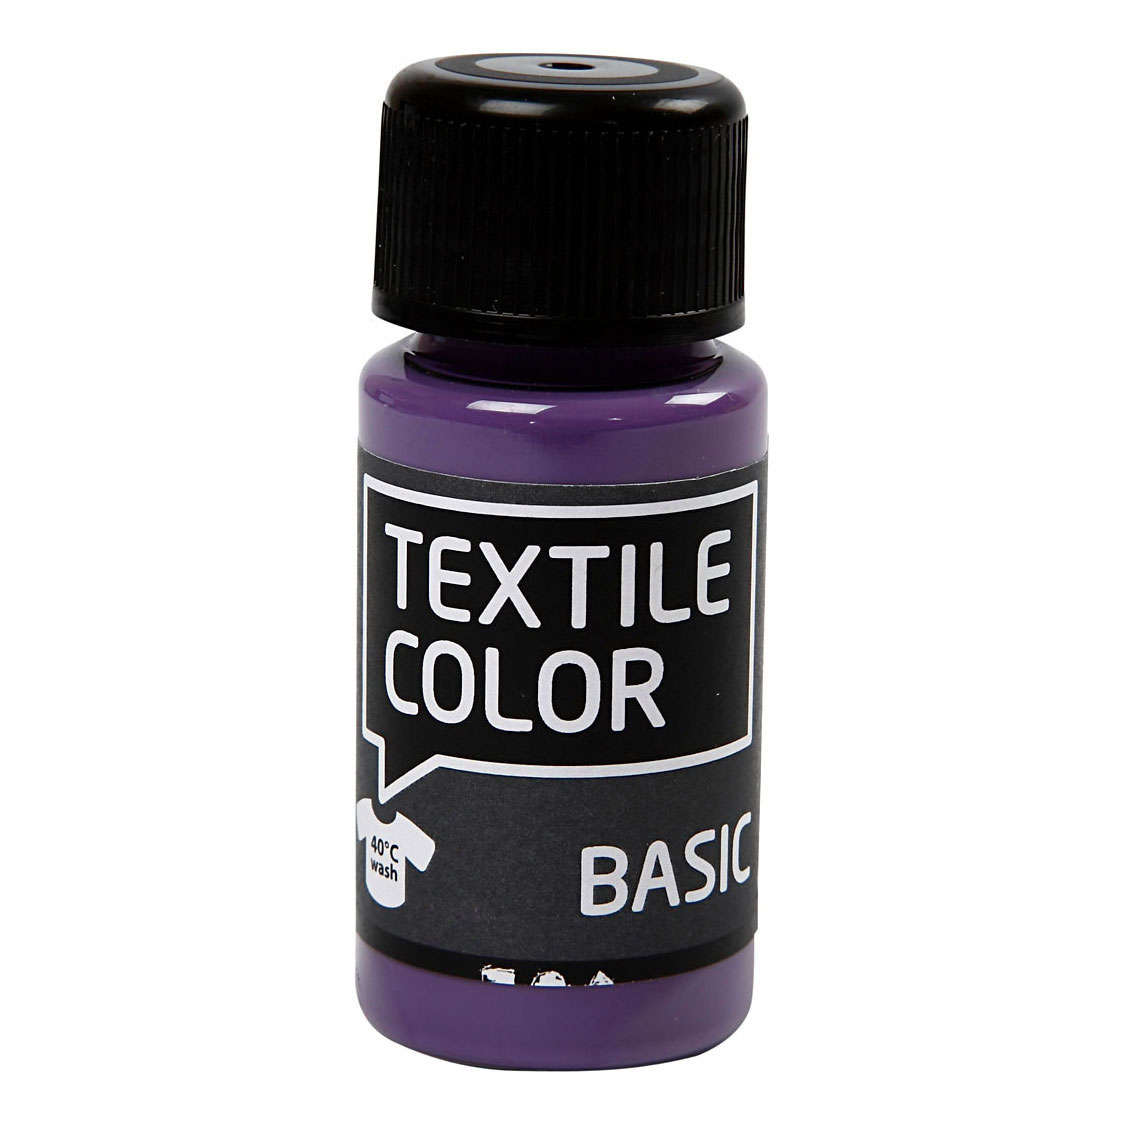 Peinture textile semi-opaque Textile Color - Lavande, 50 ml